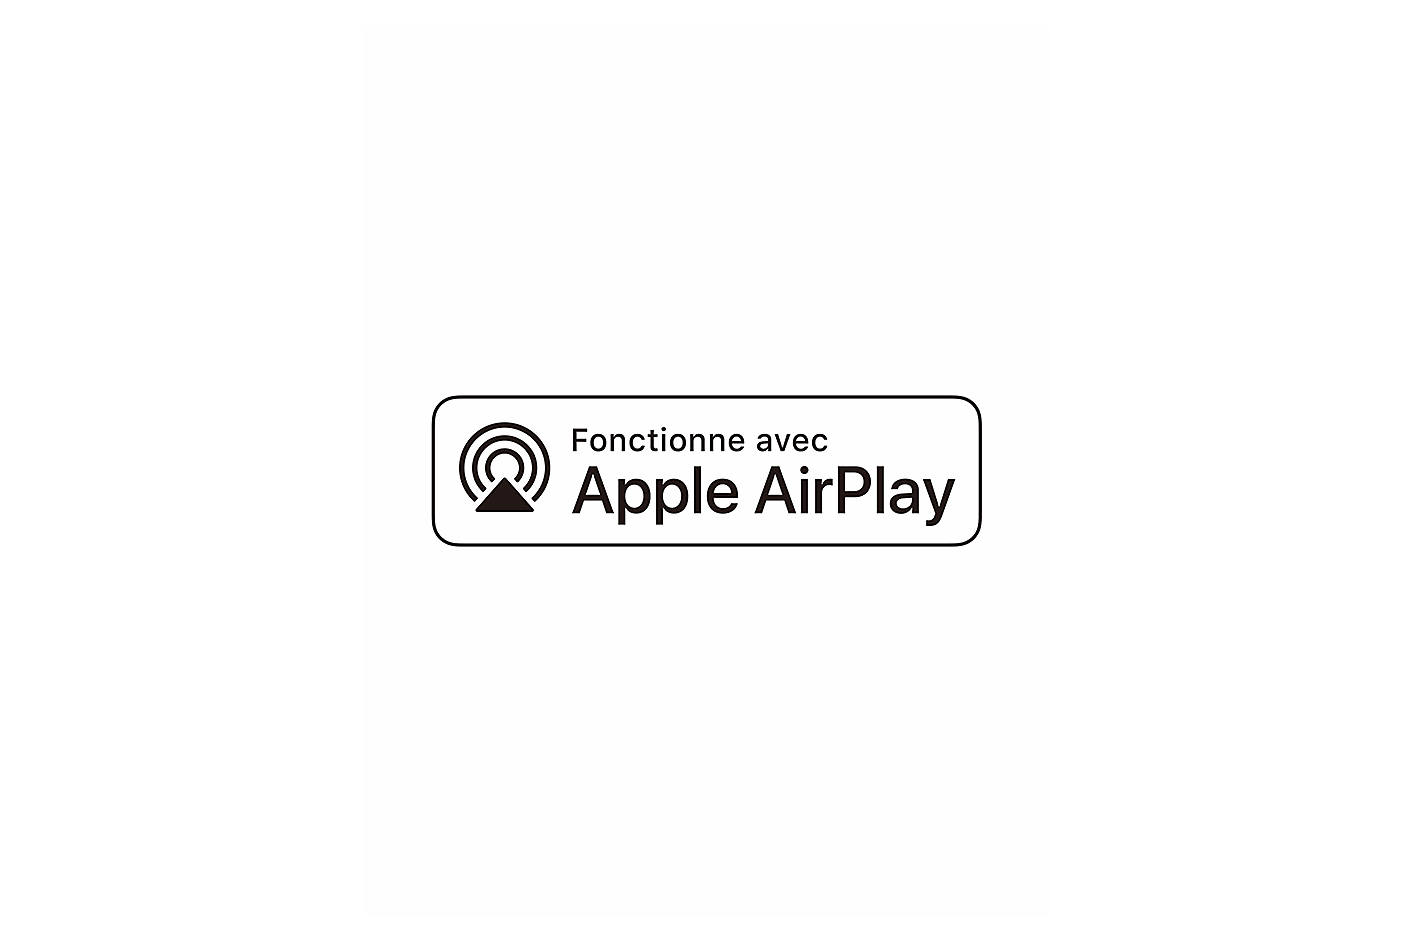 Az Apple AirPlay logó képe